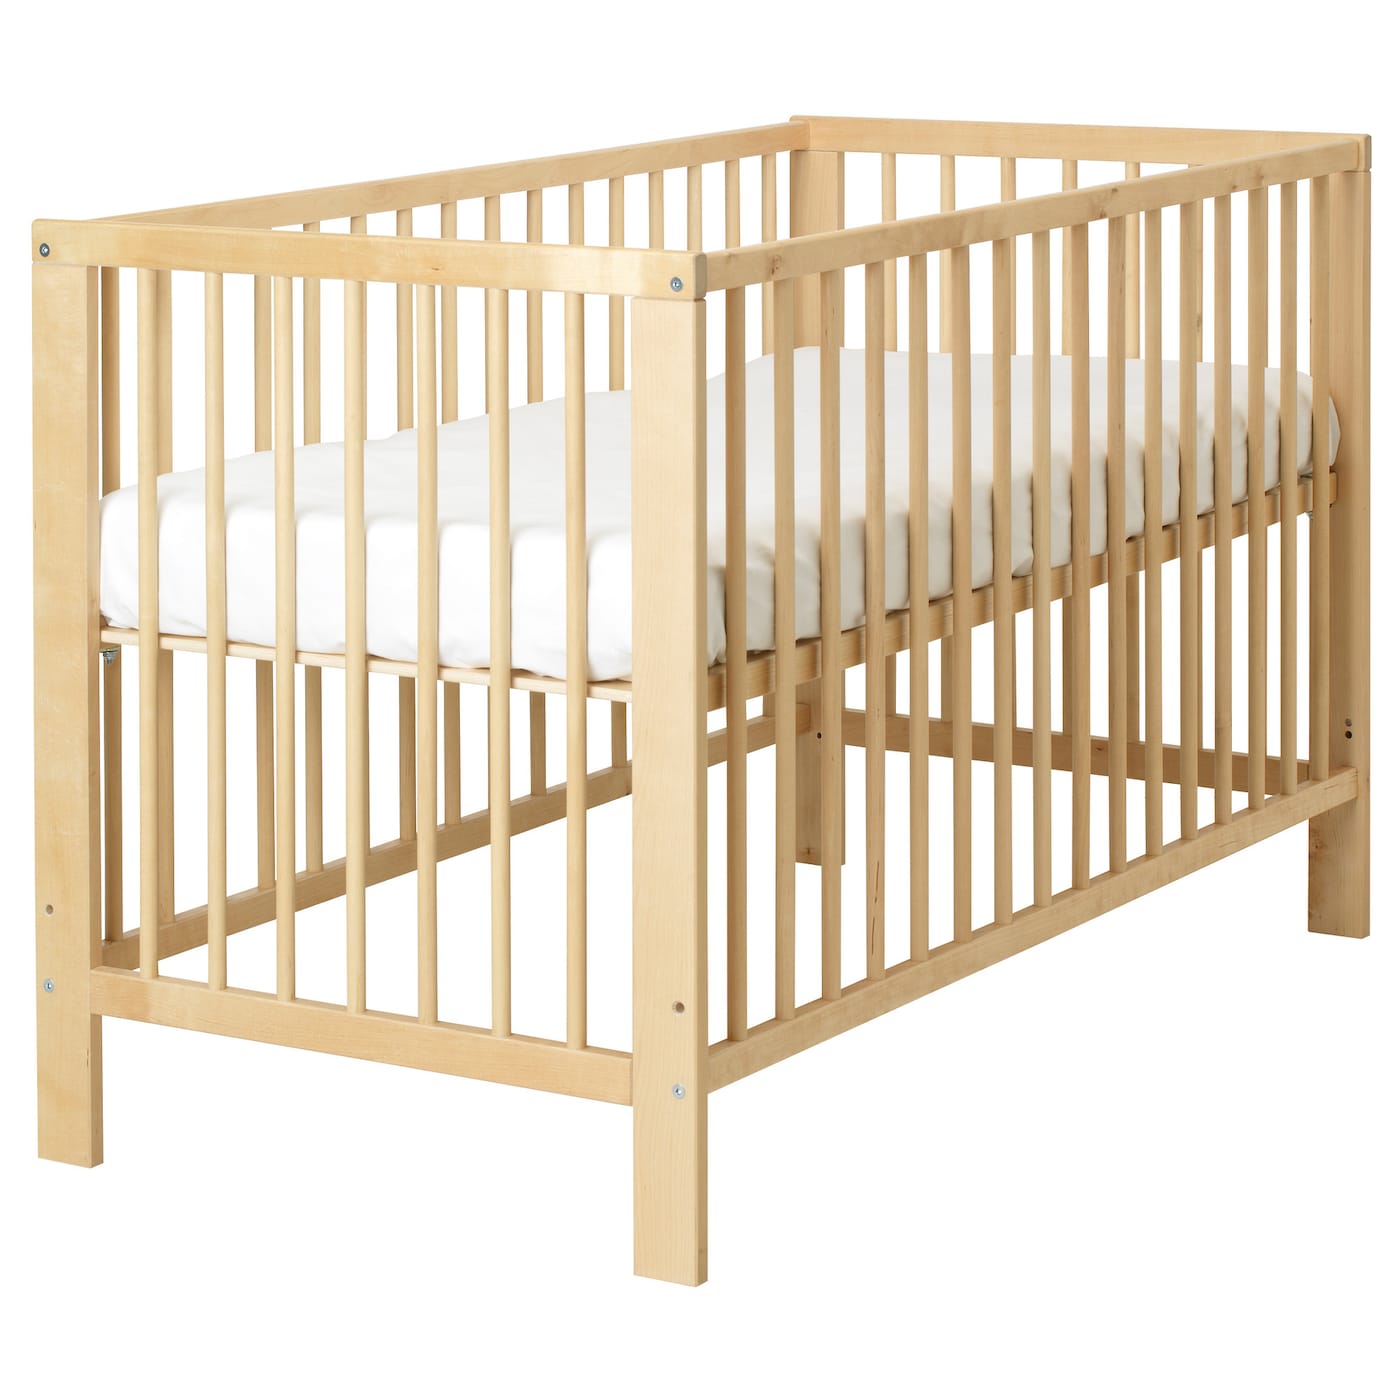 Детская кроватка - IKEA GULLIVER, 80x123x66см, светло-коричневый, ГУЛЛИВЕР ИКЕА